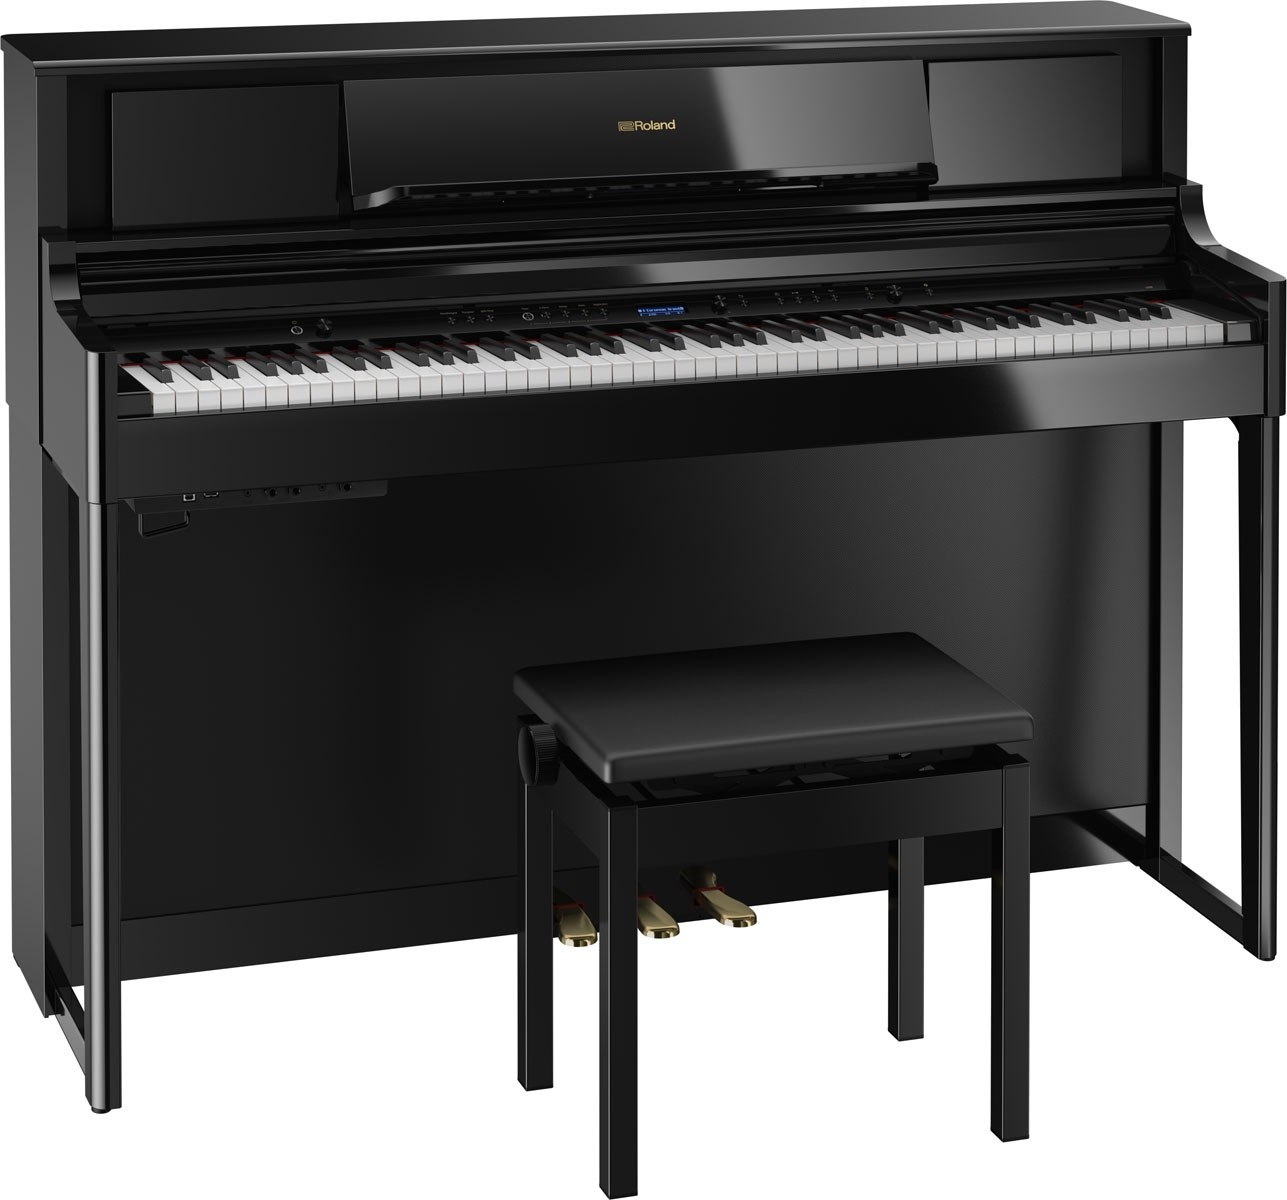 eer autobiografie Verzwakken Roland LX705 luxueuze digitale piano direct leverbaar uit voorraad leverbaar